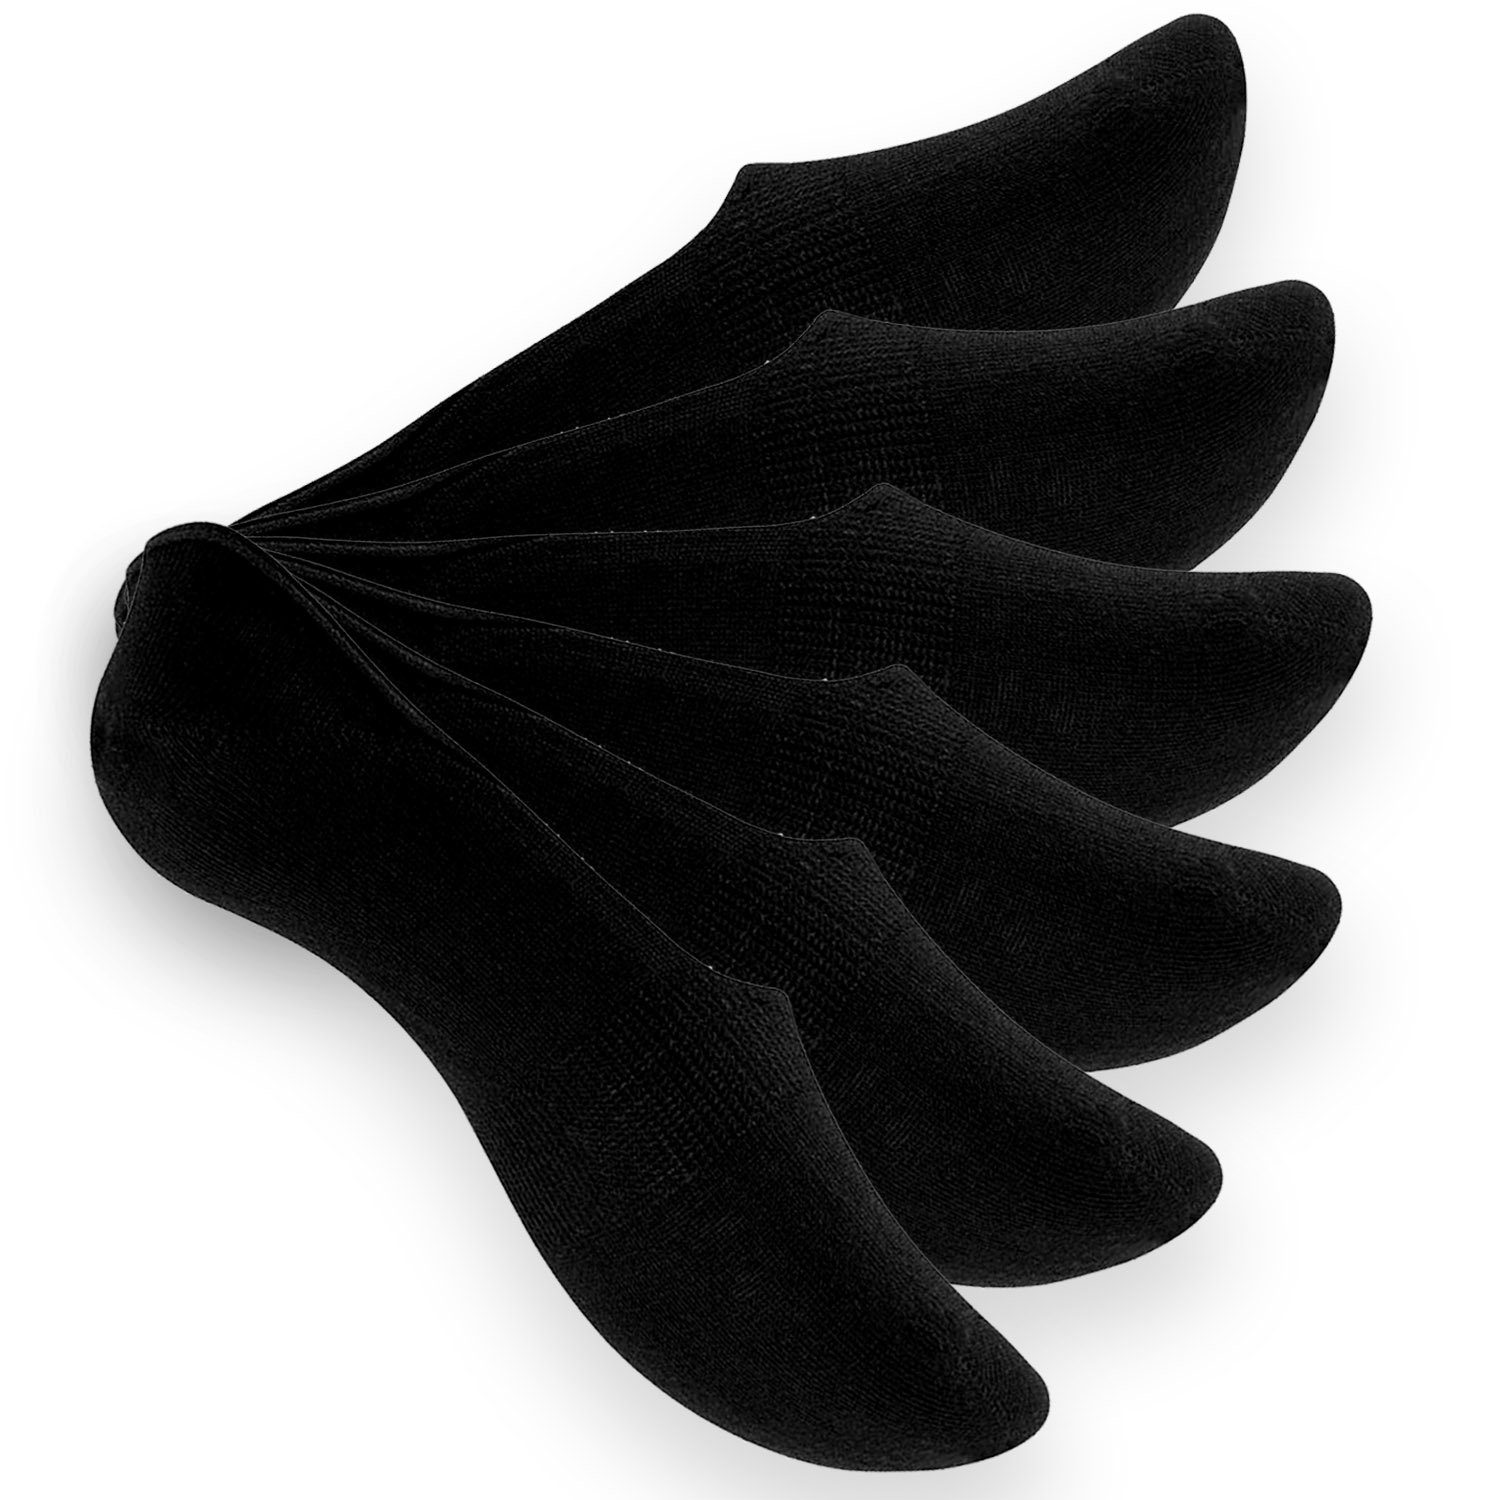 Füßlinge Reslad Herren unsichtbare schwarz Unisex (6xPaar) & Socken Damen mit Reslad rutschfeste Silikonp Unsichtbare Sneaker Füßlinge (6-Paar)